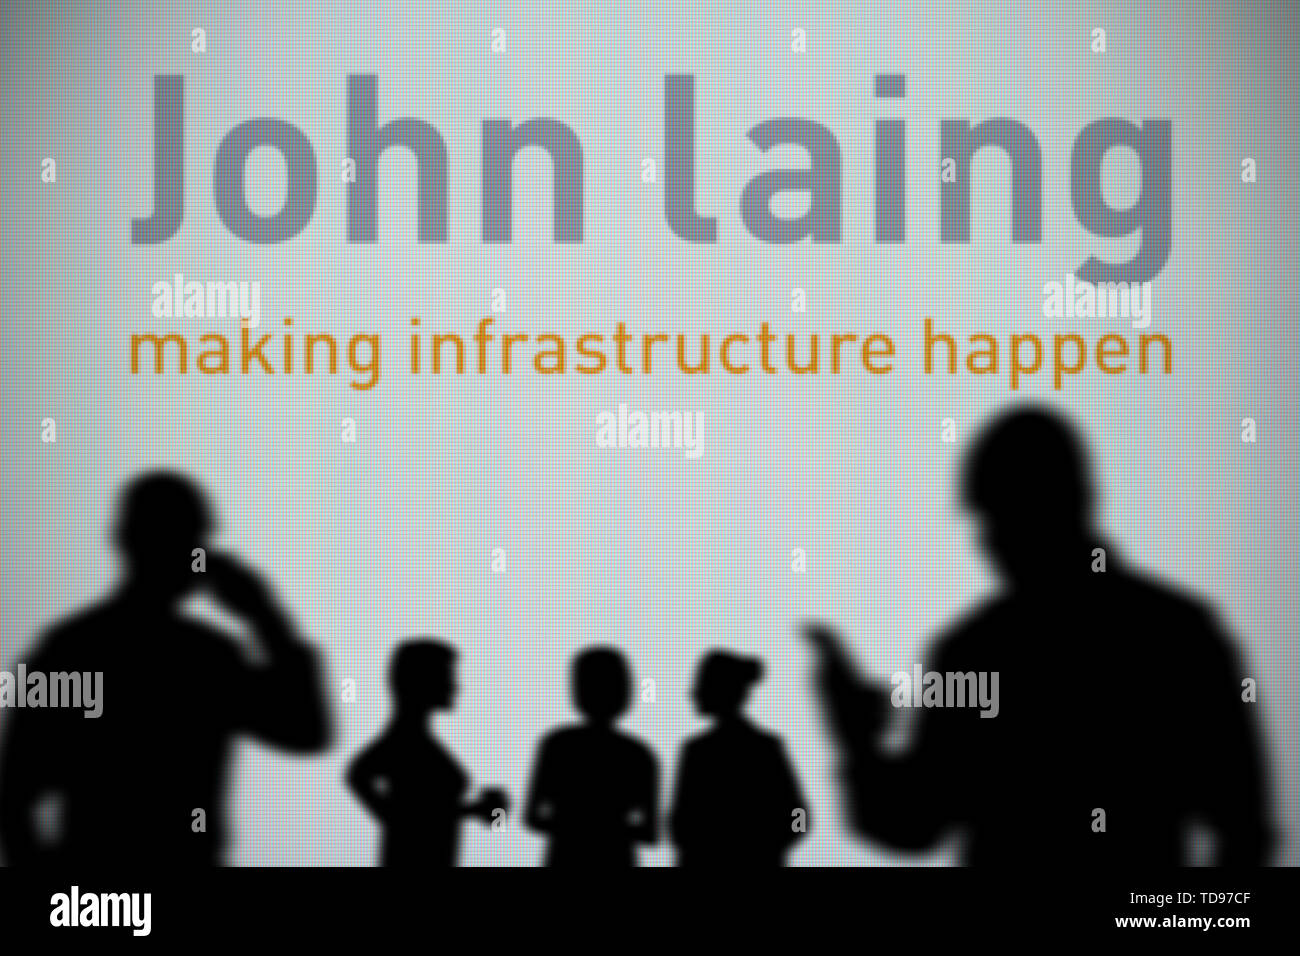 Il John Laing logo è visibile su uno schermo a LED in background mentre si profila una persona utilizza uno smartphone in primo piano (solo uso editoriale) Foto Stock